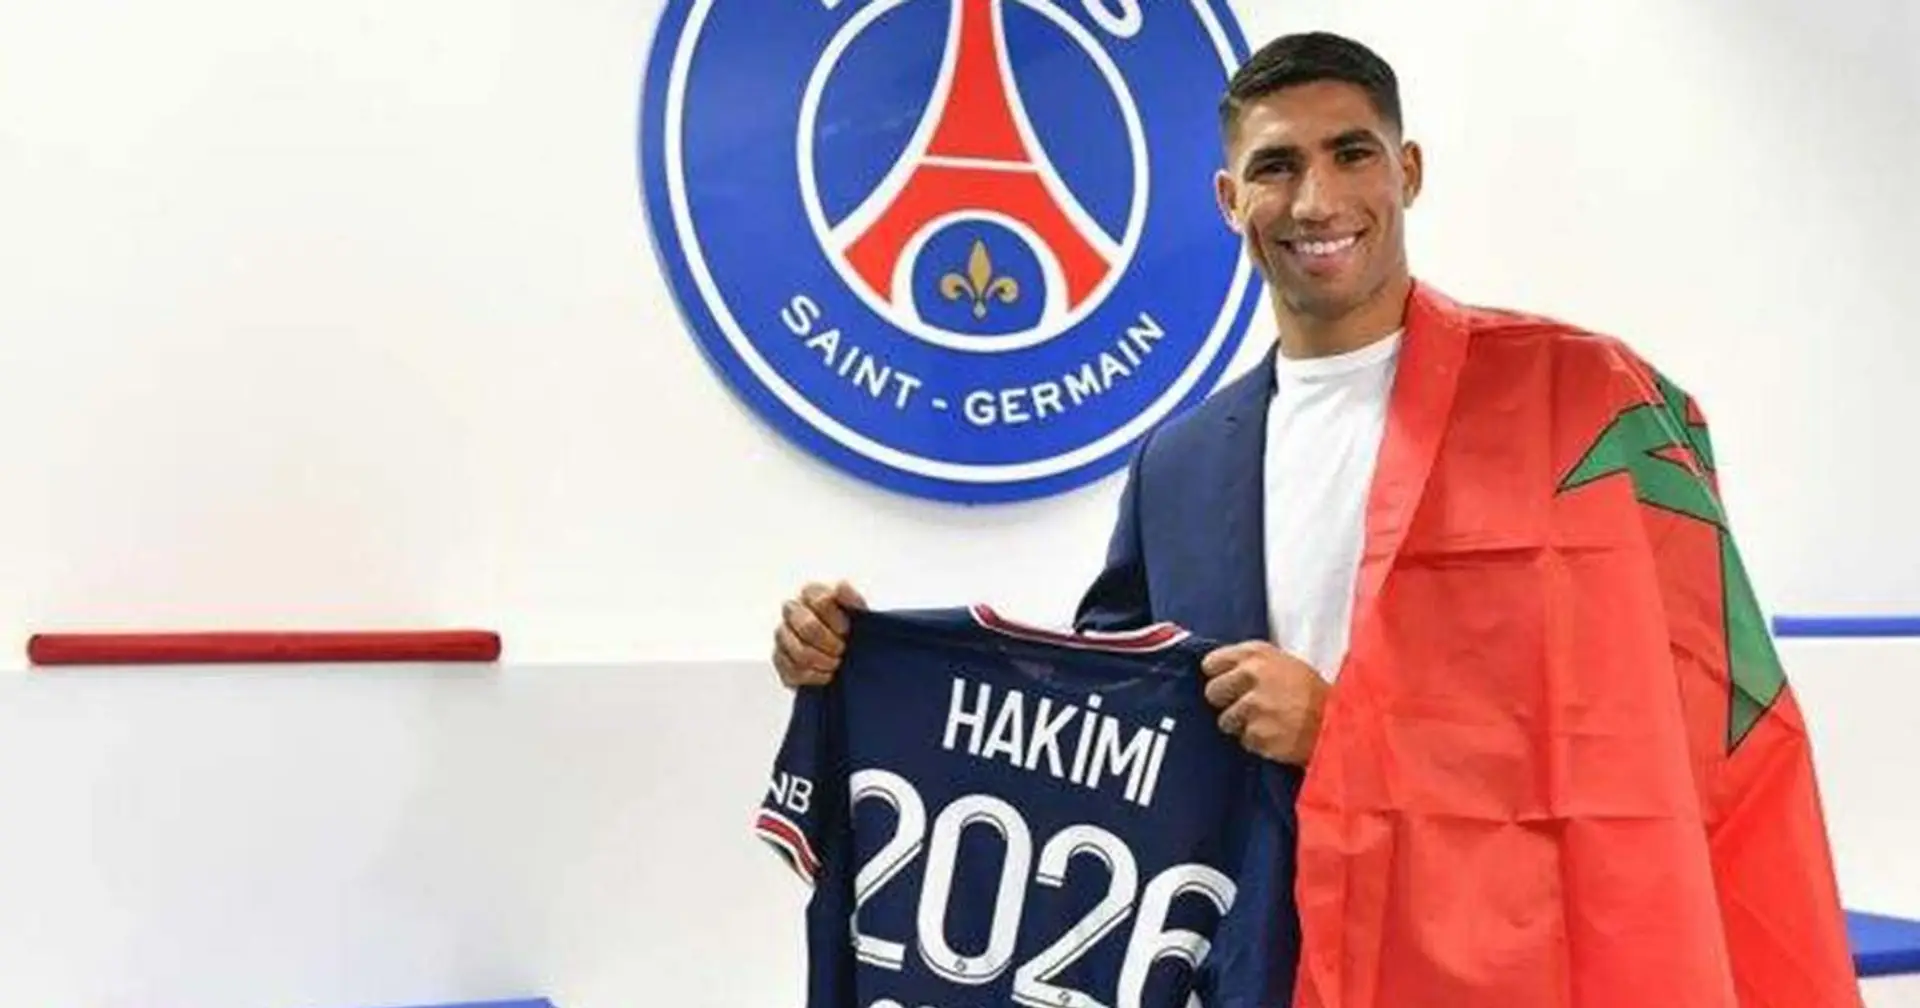 Hakimi est t-il le premier marocain à jouer au PSG? Vous avez demandé, nous répondons